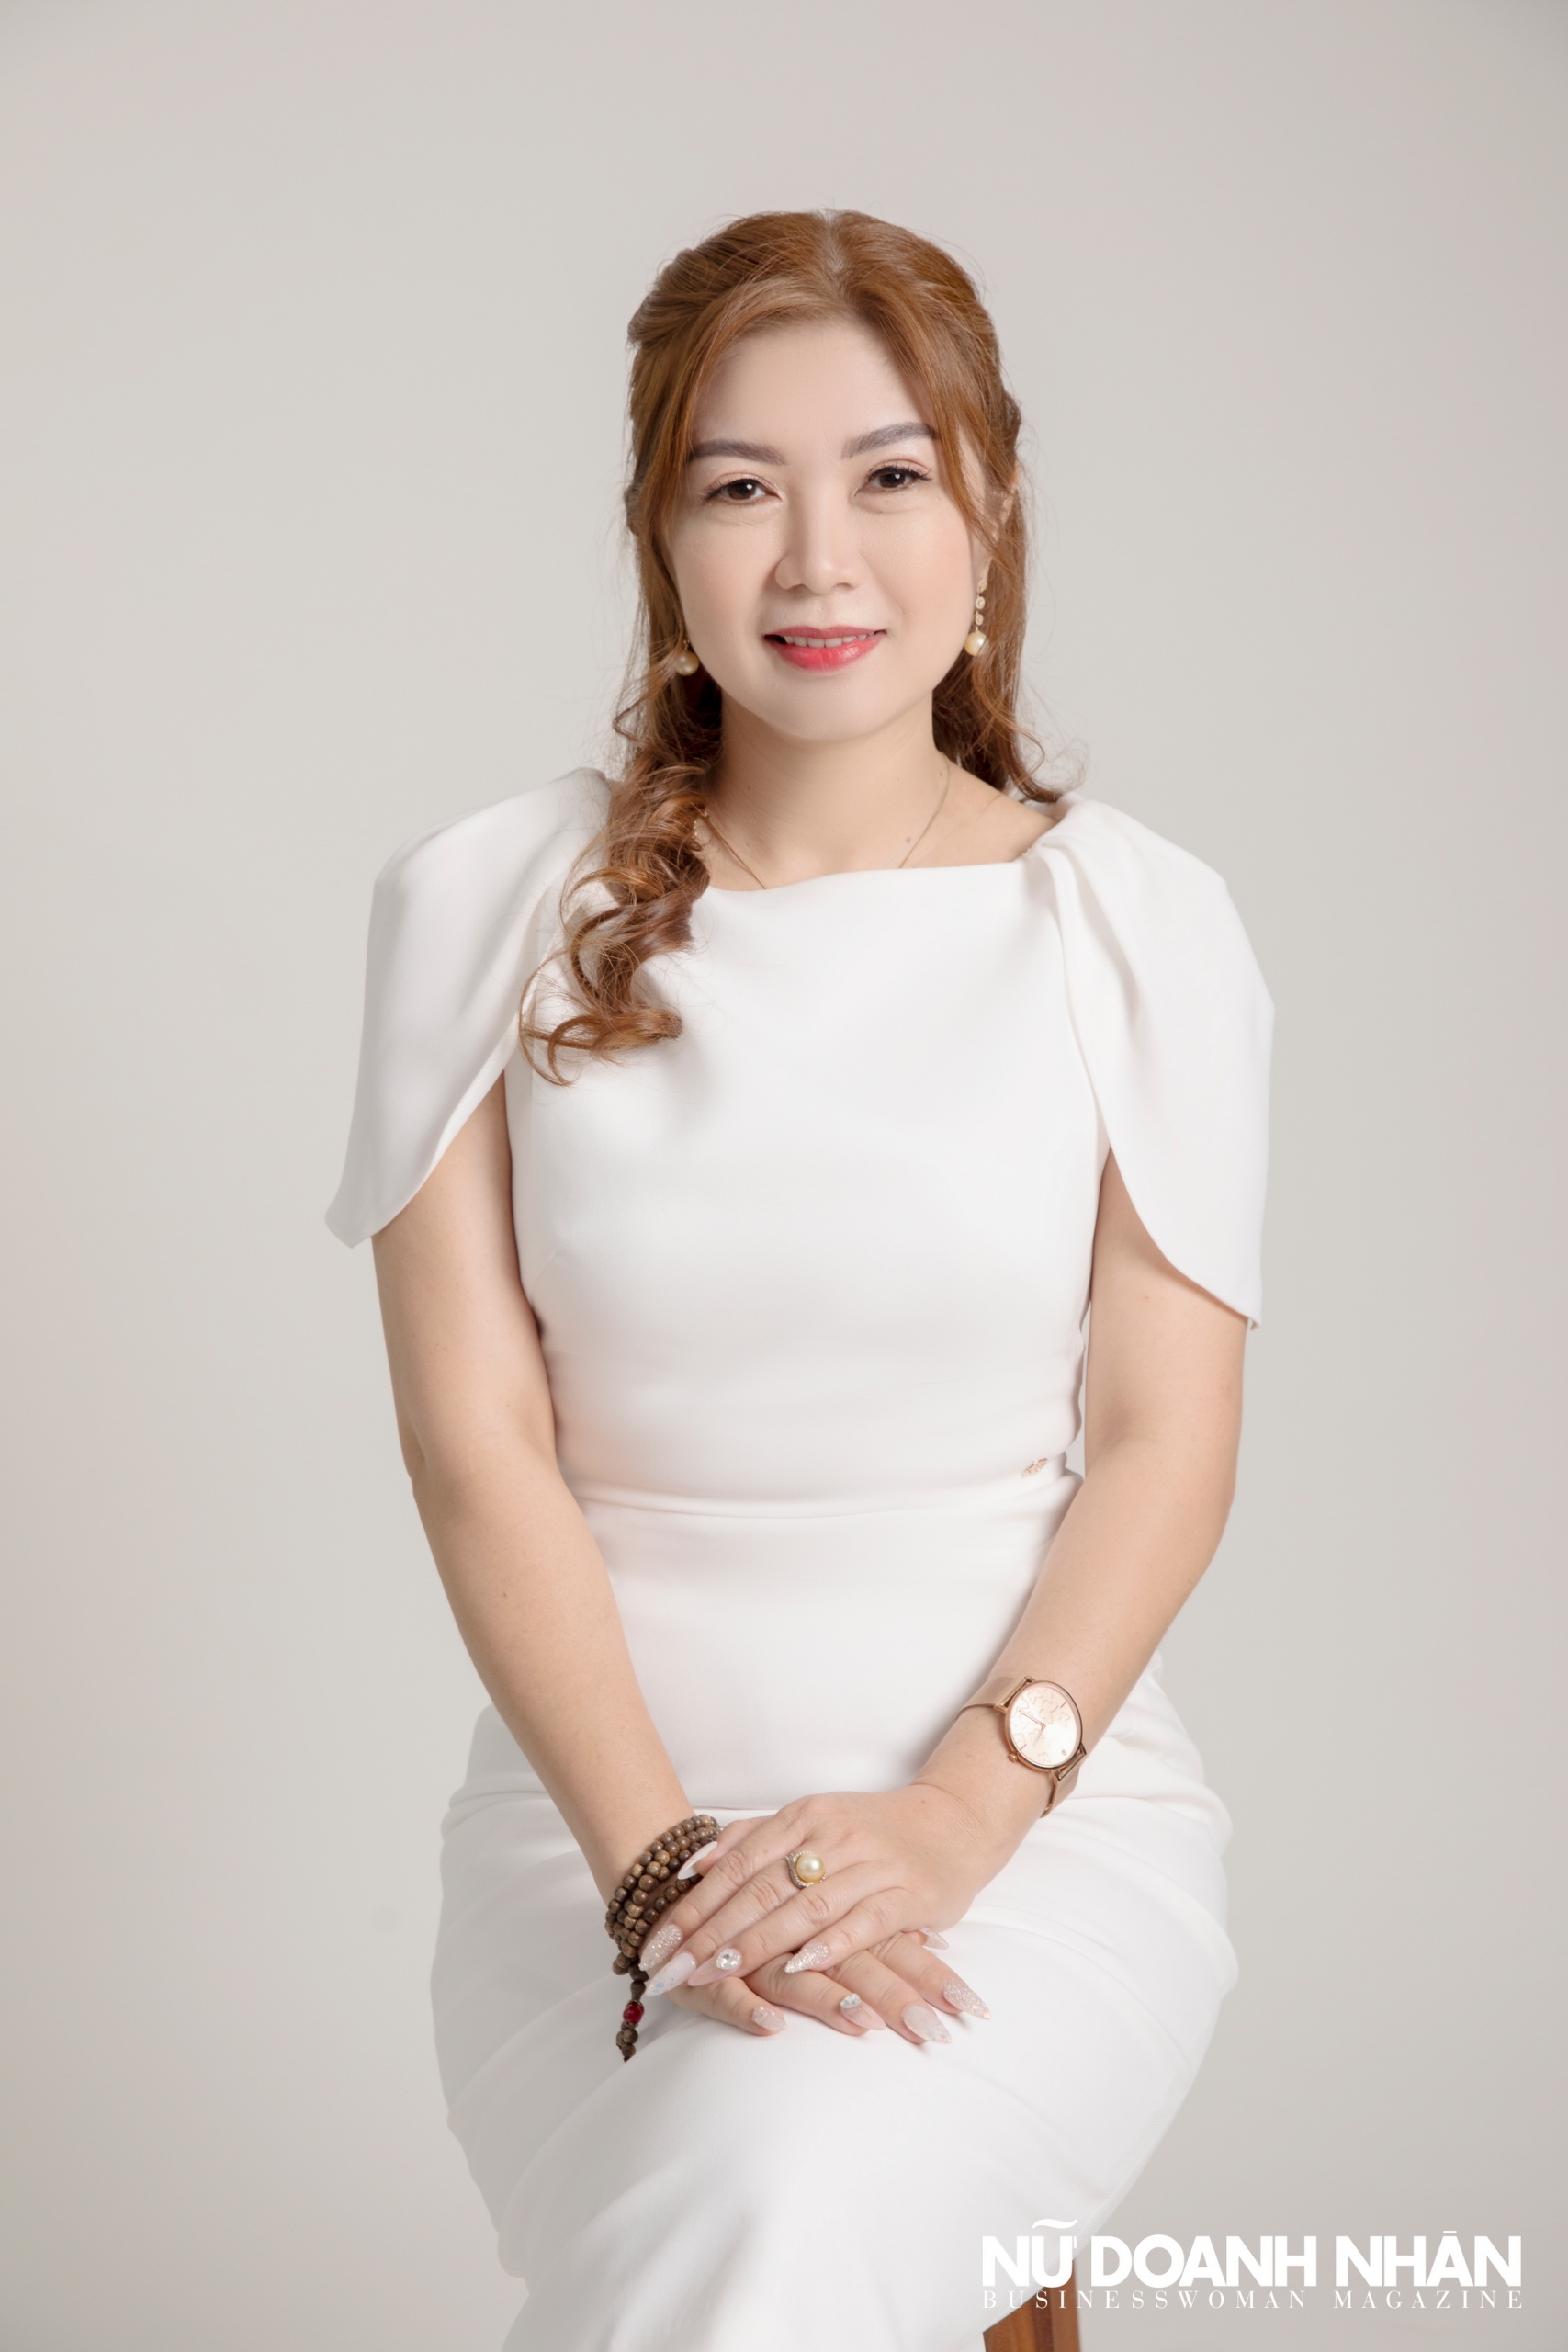 Phỏng vấn nữ doanh nhân Phạm Thị Ngọc Hiền công ty Kỳ Phong tài chính cá nhân khởi nghiệp triệu đô